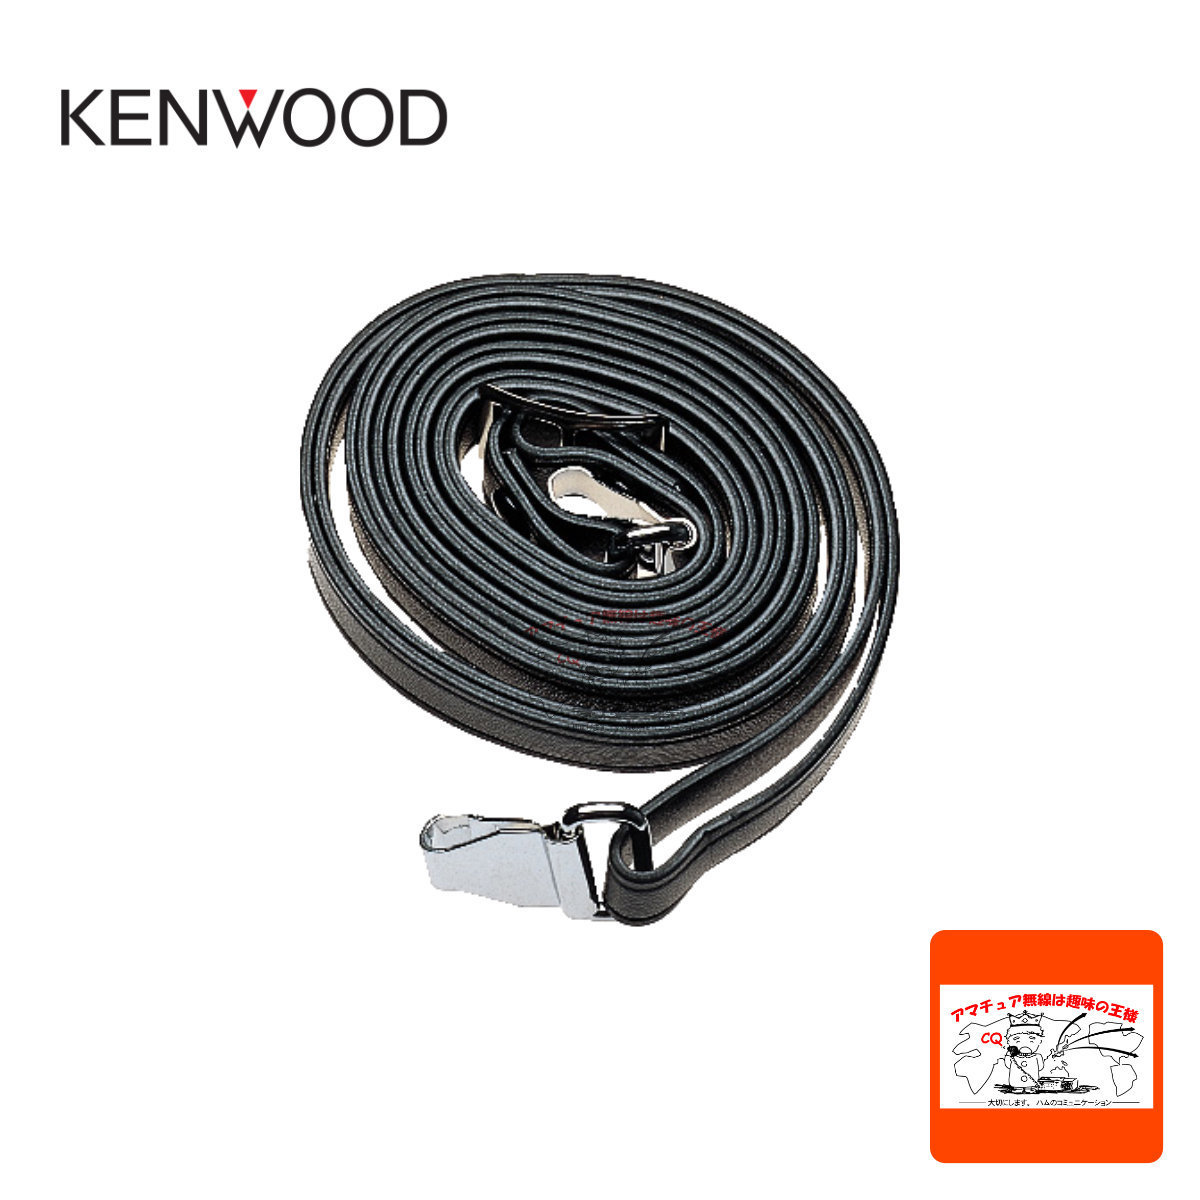 KSB-1 Kenwood shoulder belt 